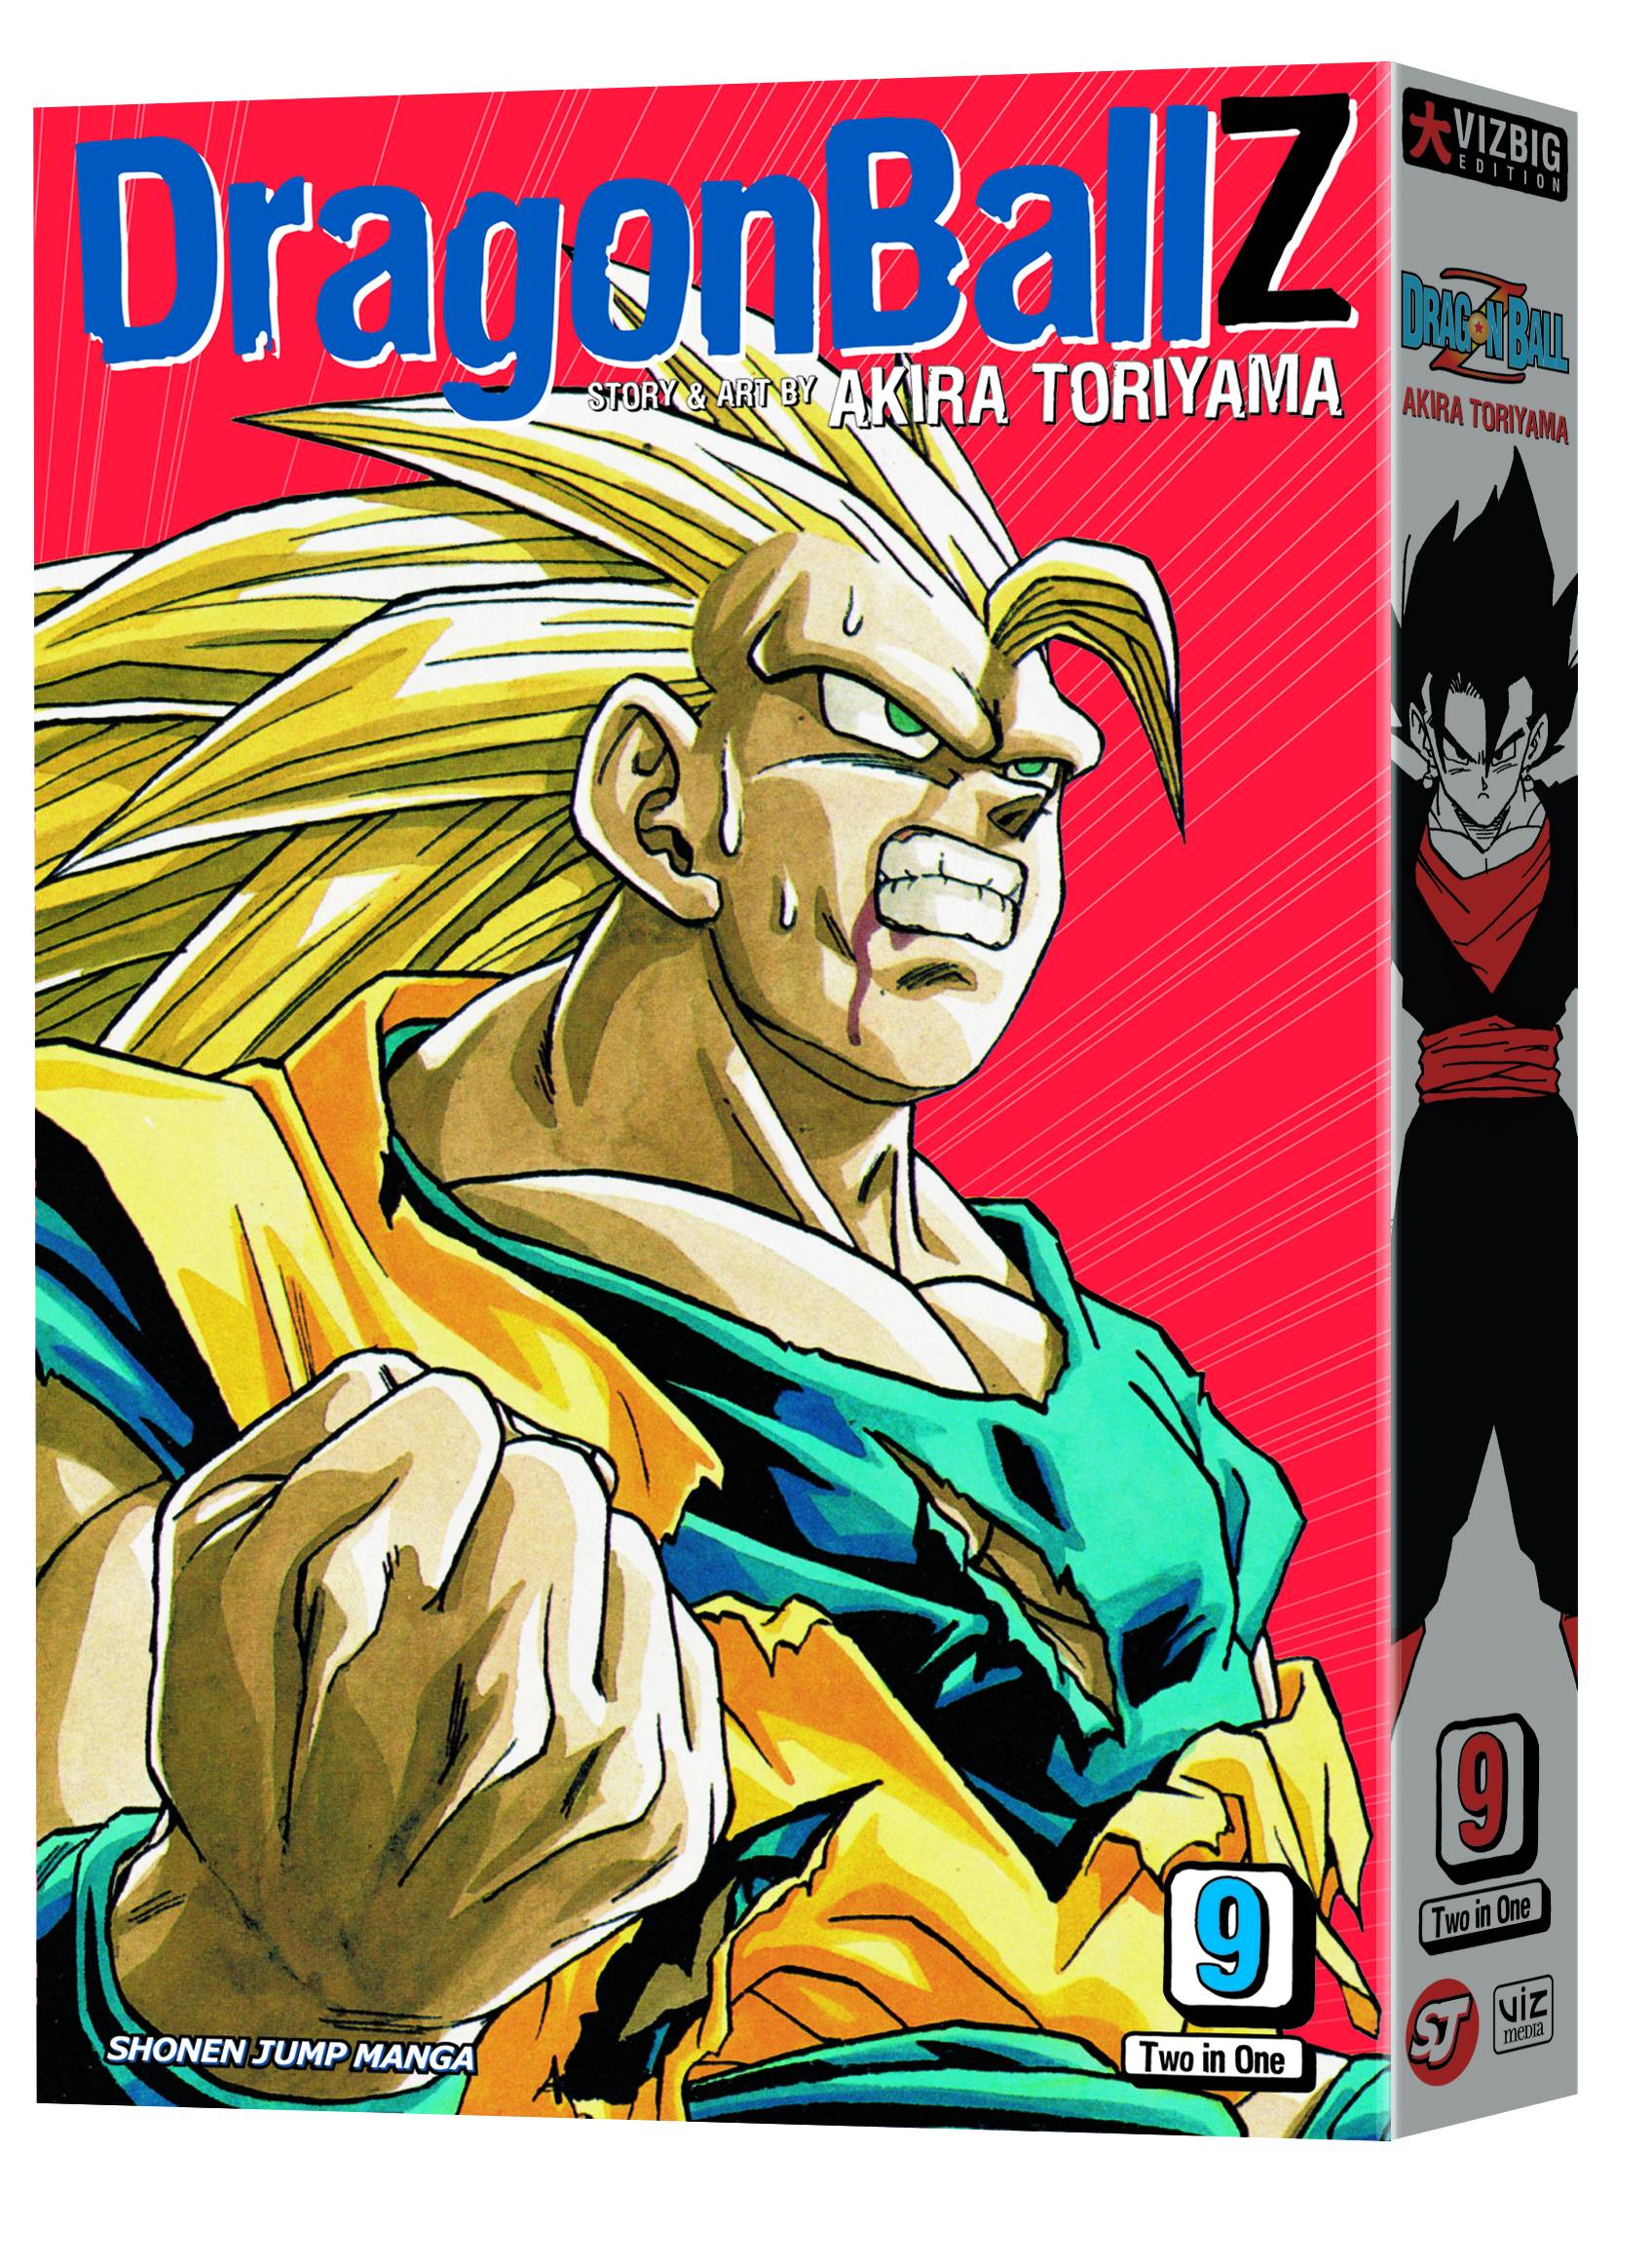 Dragon Ball Z Vizbig Edition Manga Volume 9